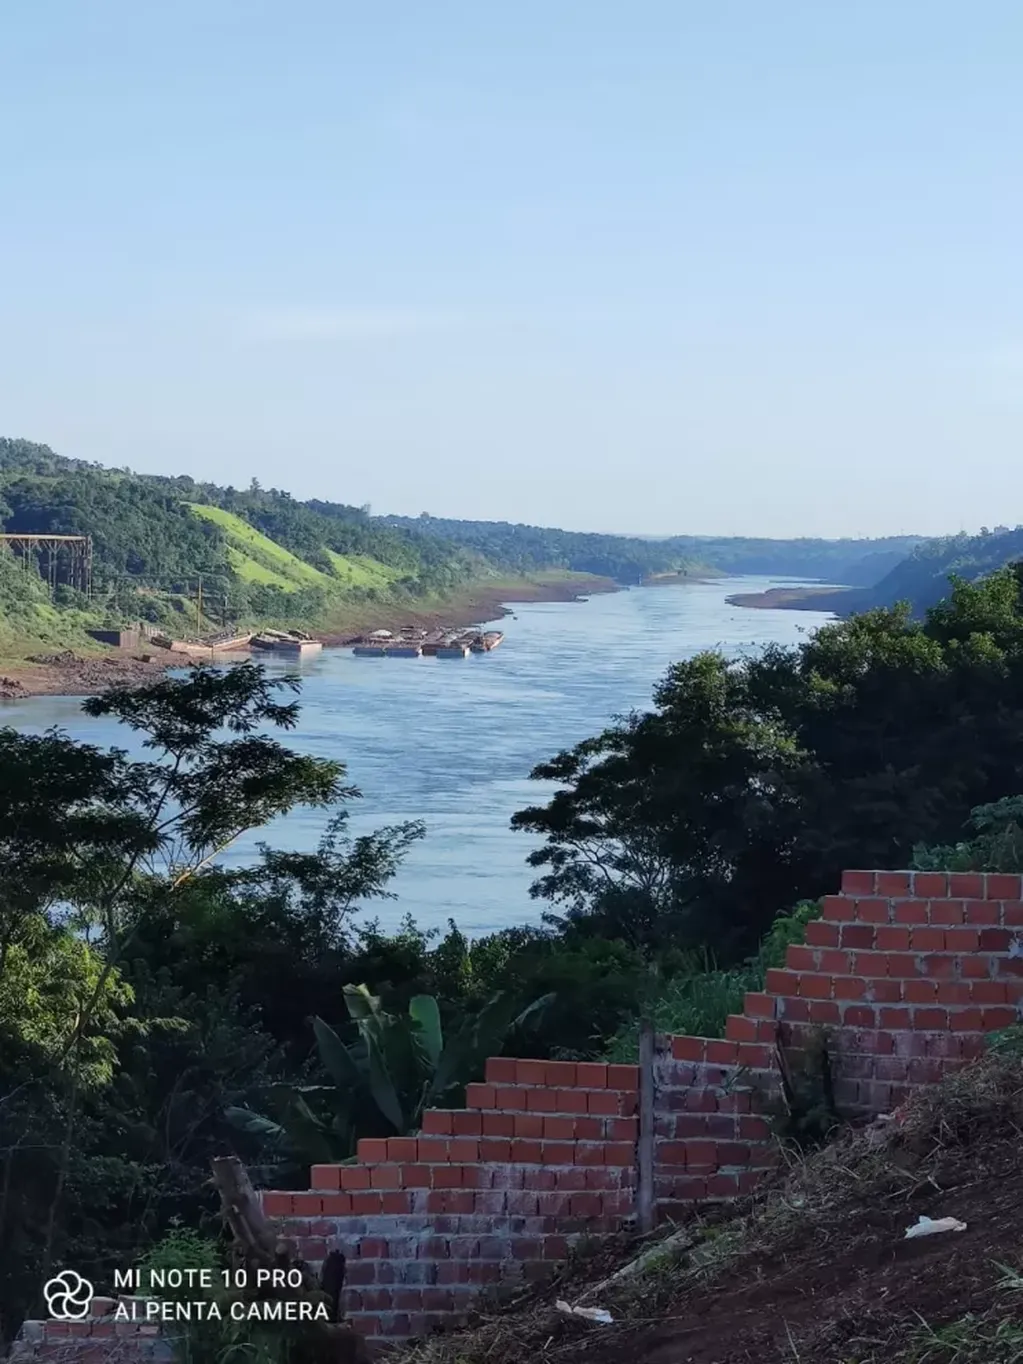 Producto de la intensa sequía, alrededor de 15 barrios se hallan sin agua en Puerto Iguazú